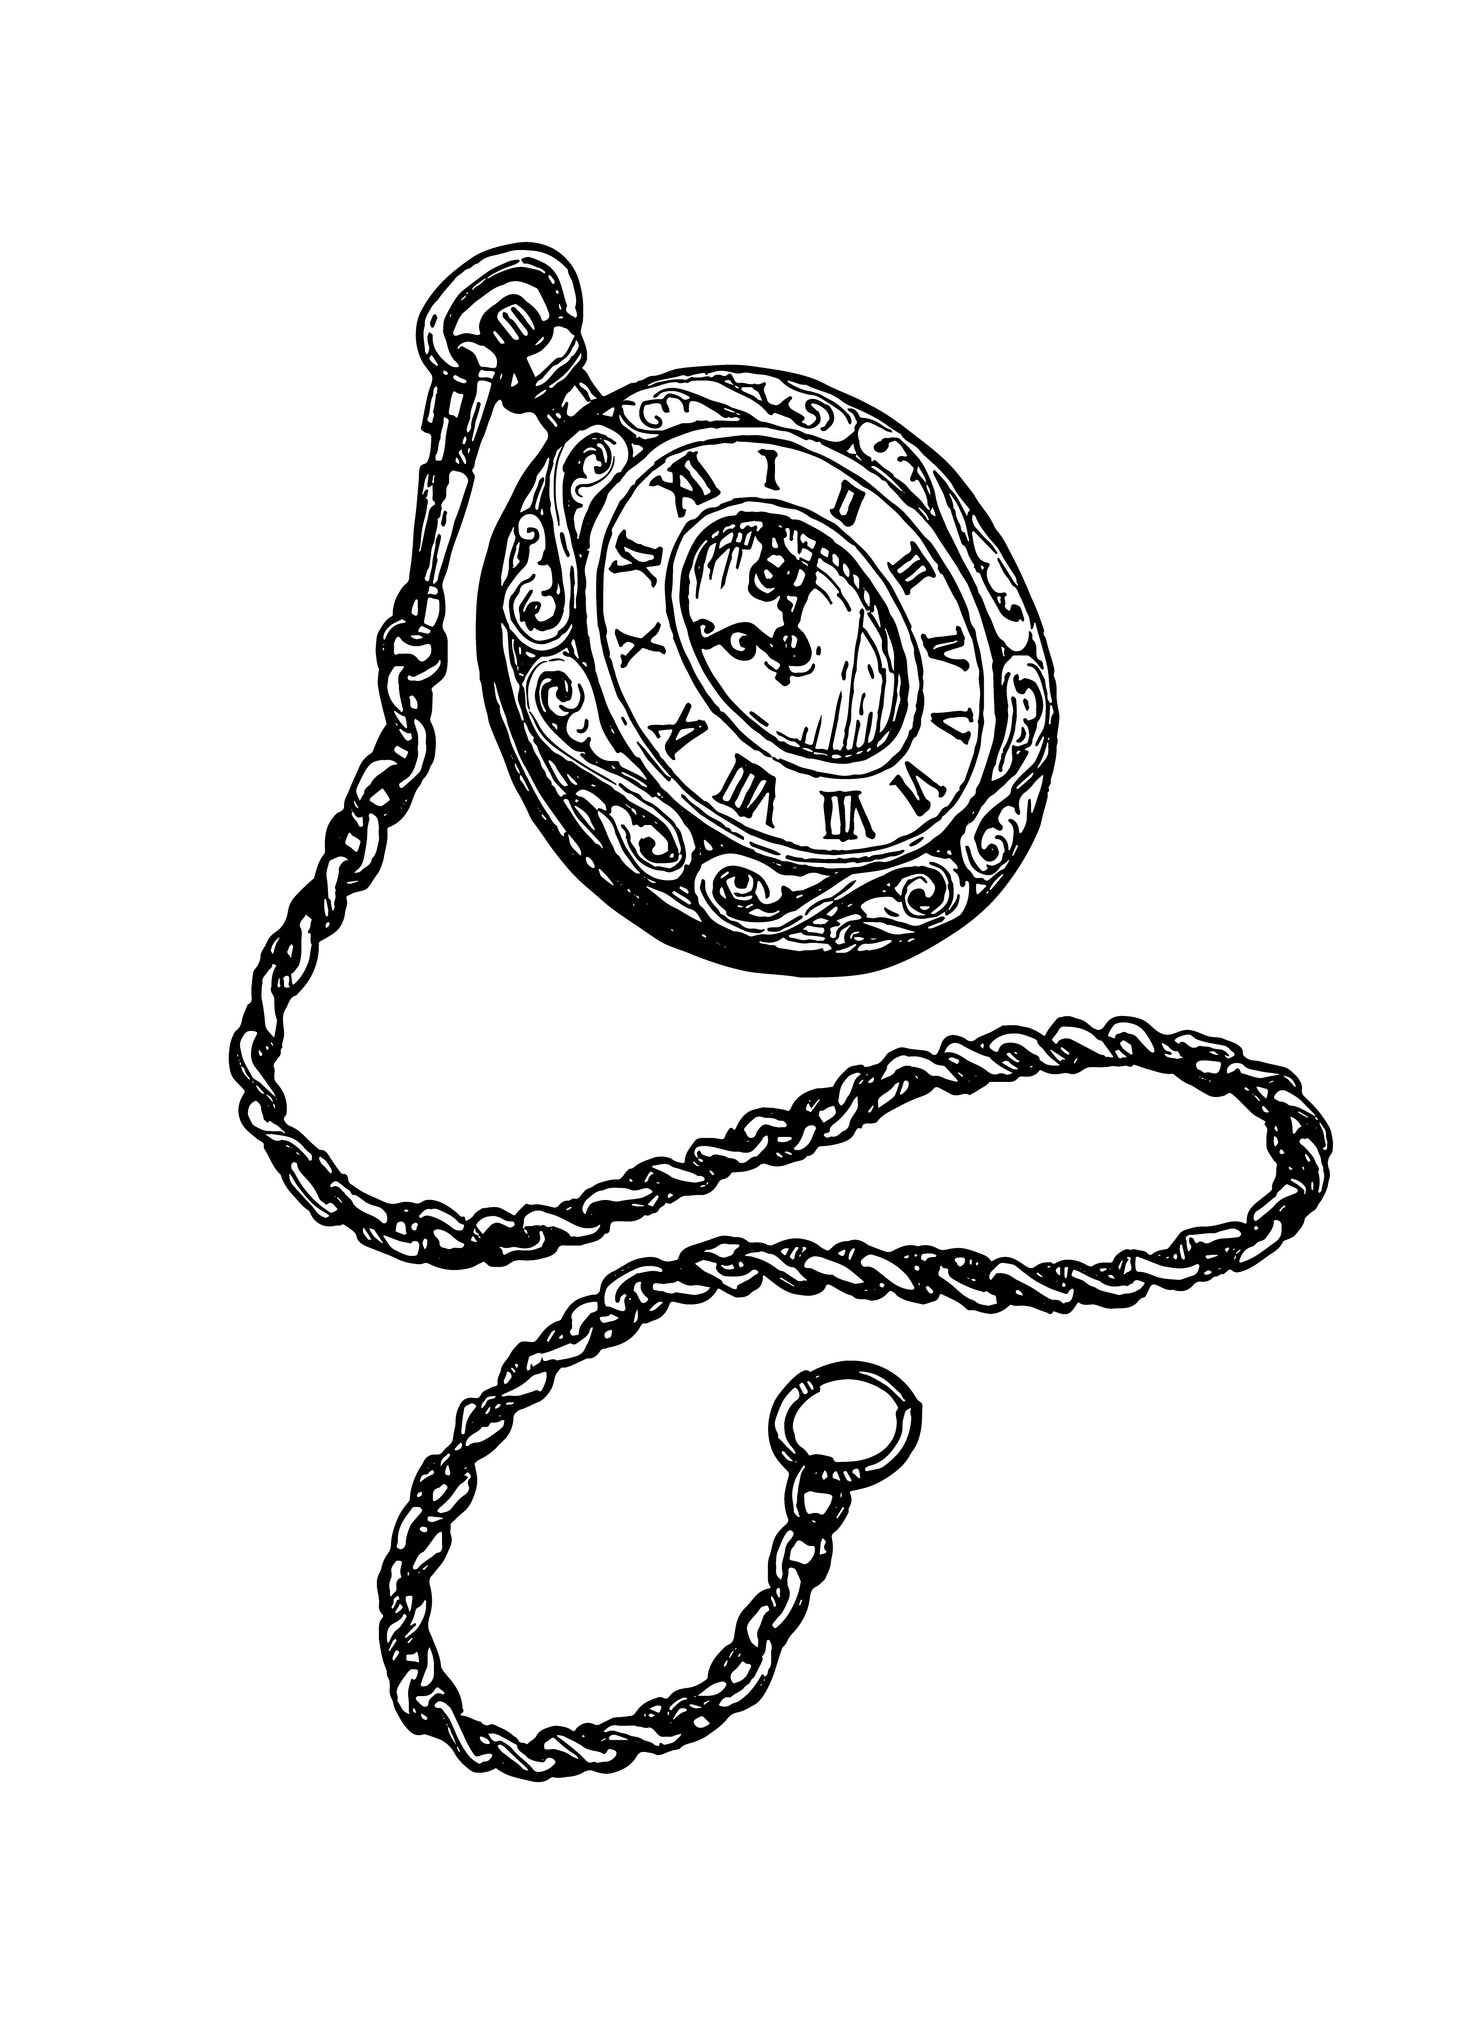 A tattoo design of a pocket watch